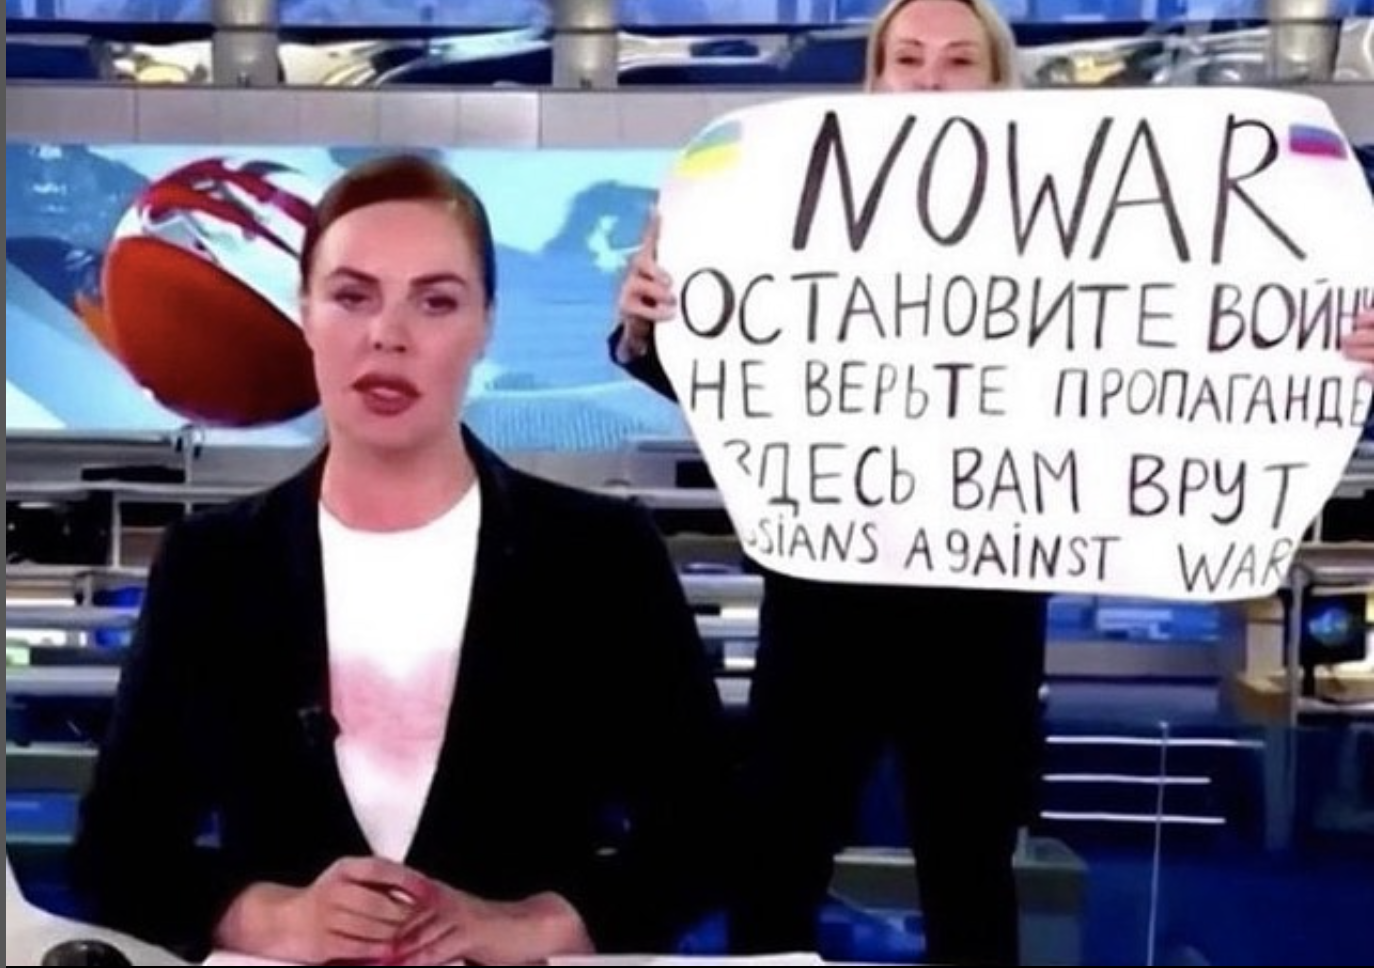 Russia, la giornalista 'no war'  Marina Ovsyannikova fuggita dai domiciliari